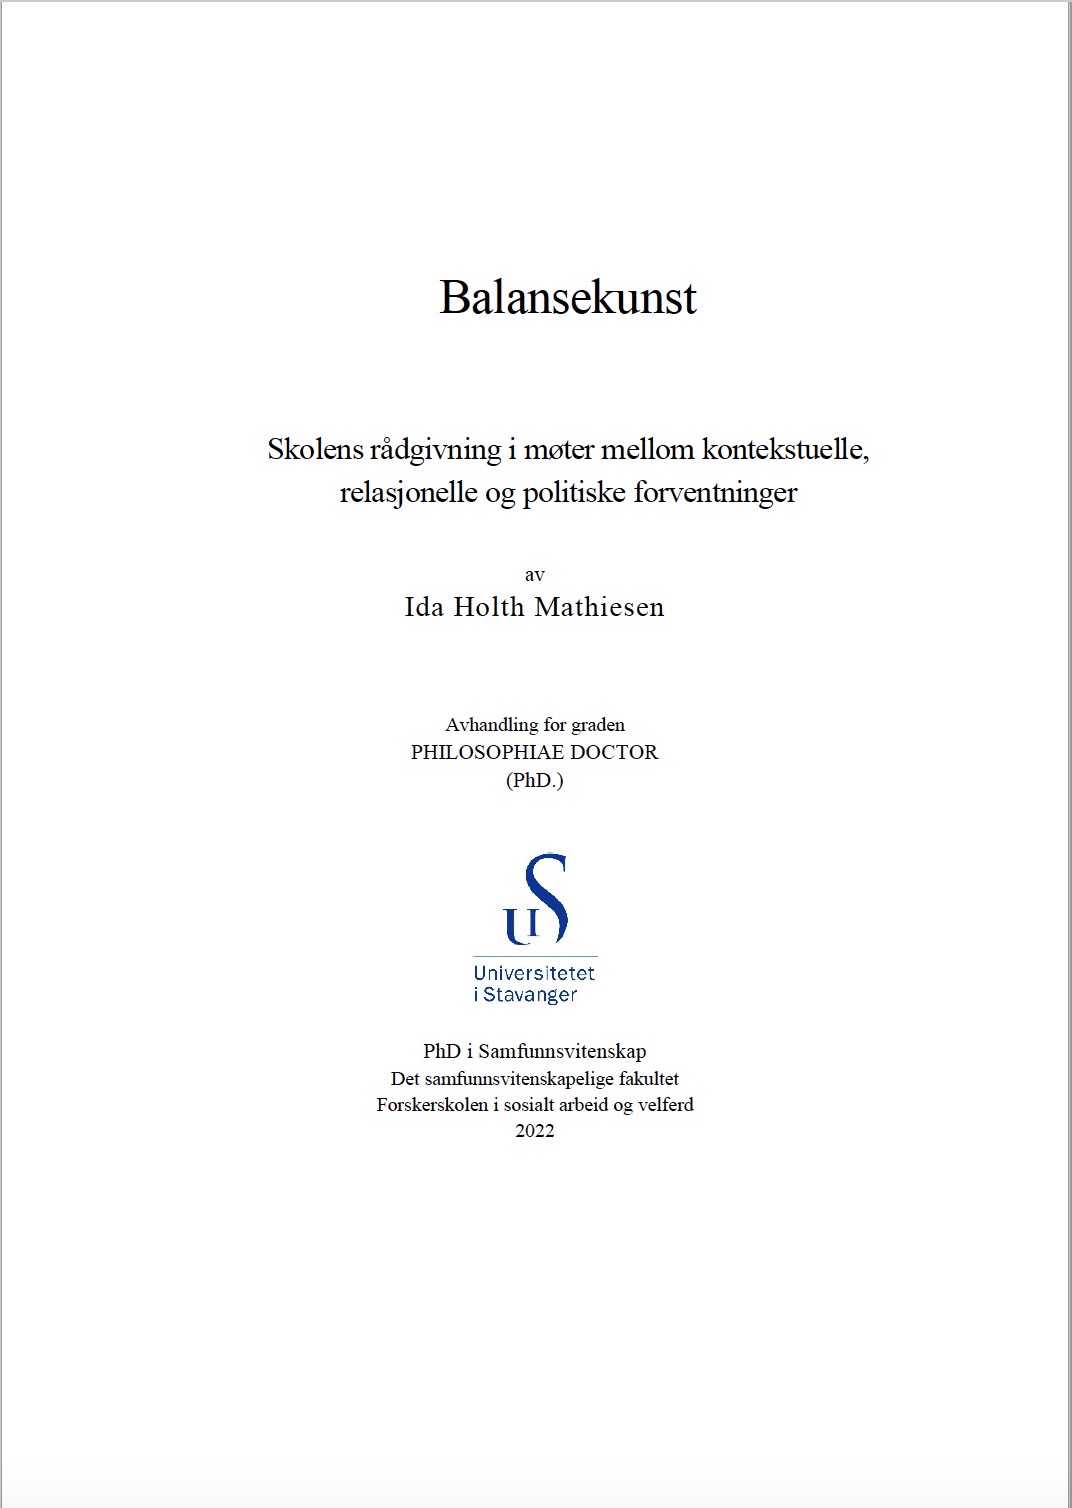 Omslag til doktorgradsavhandlingen Balansekunst (2022) av Ida Holth Mathiesen.